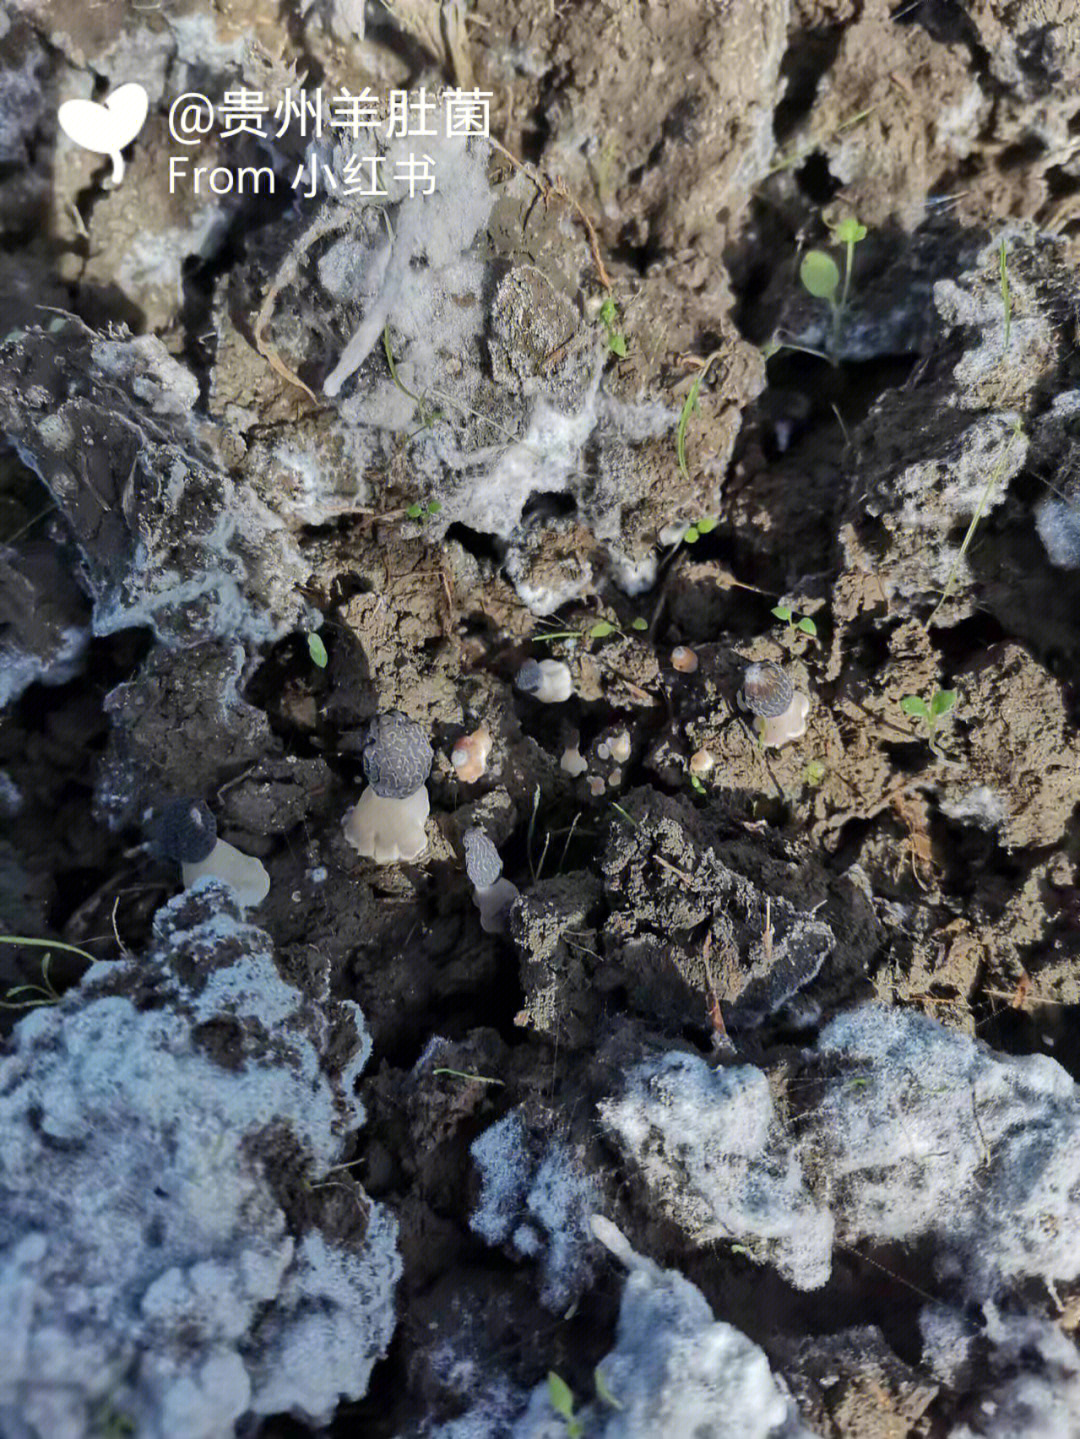 菌丝体阶段不需要光照,这时候可以盖上地膜,能够起到保温保湿防止杂草